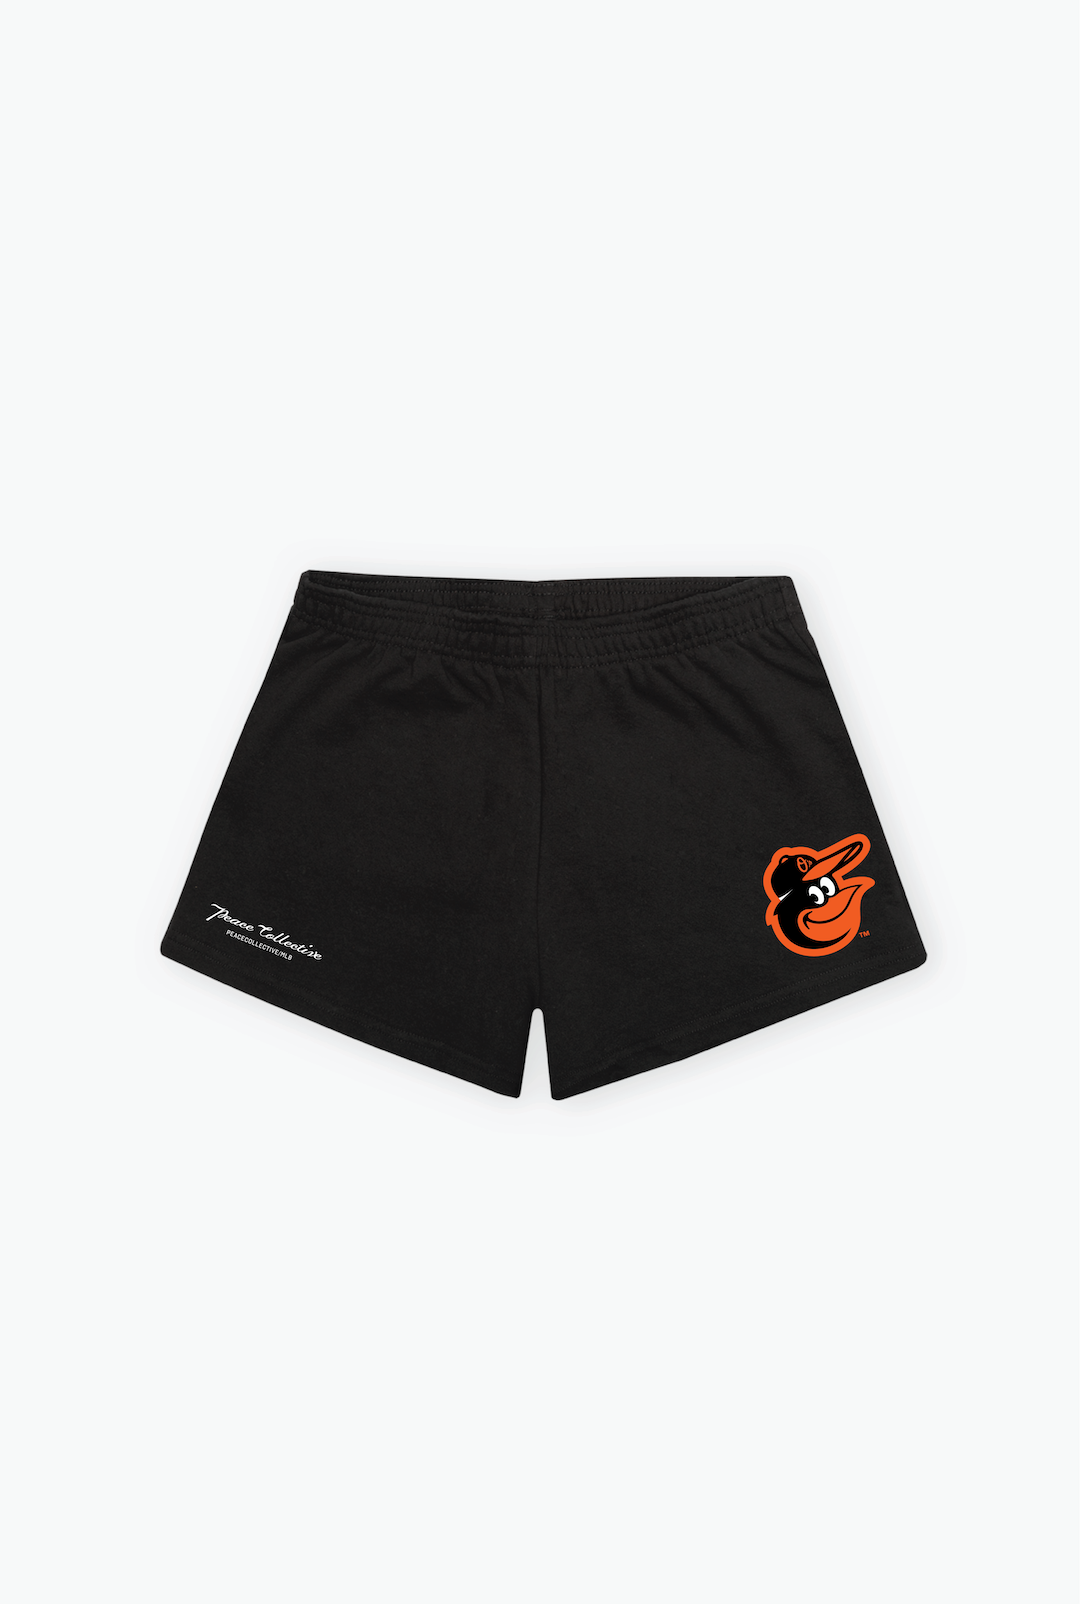 Baltimore Orioles Logo Women's Fleece Shorts - Black